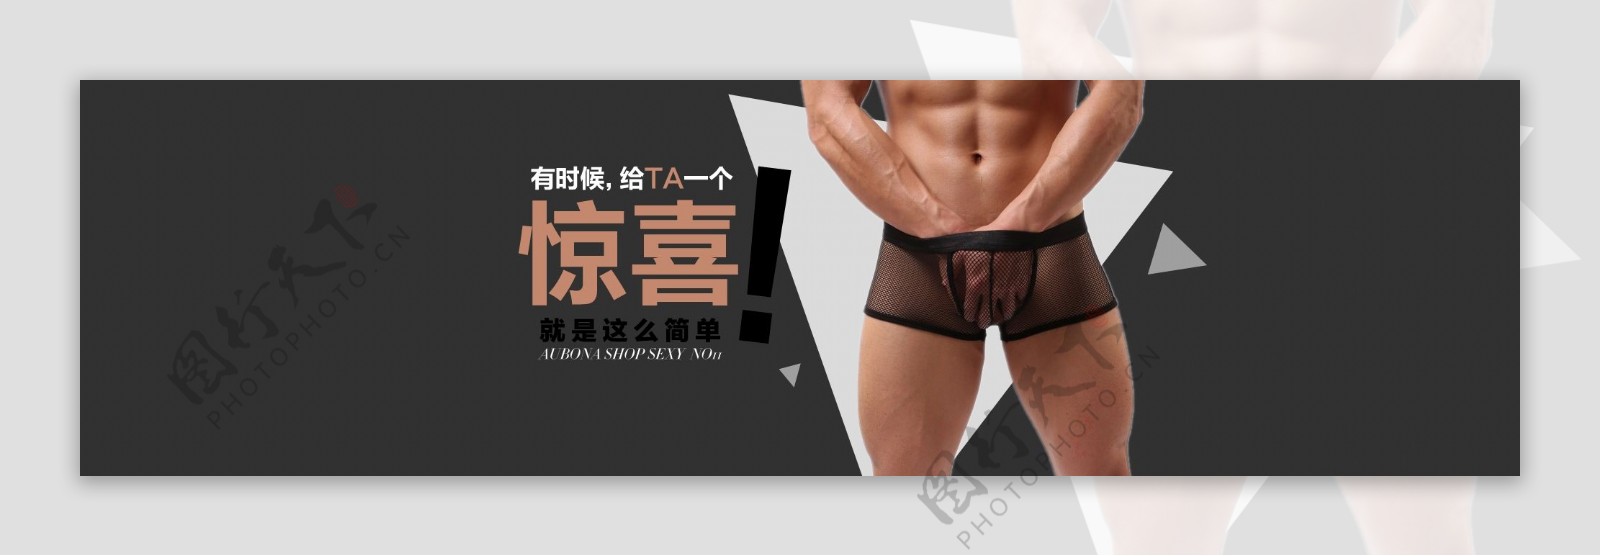 男内裤主题活动海报